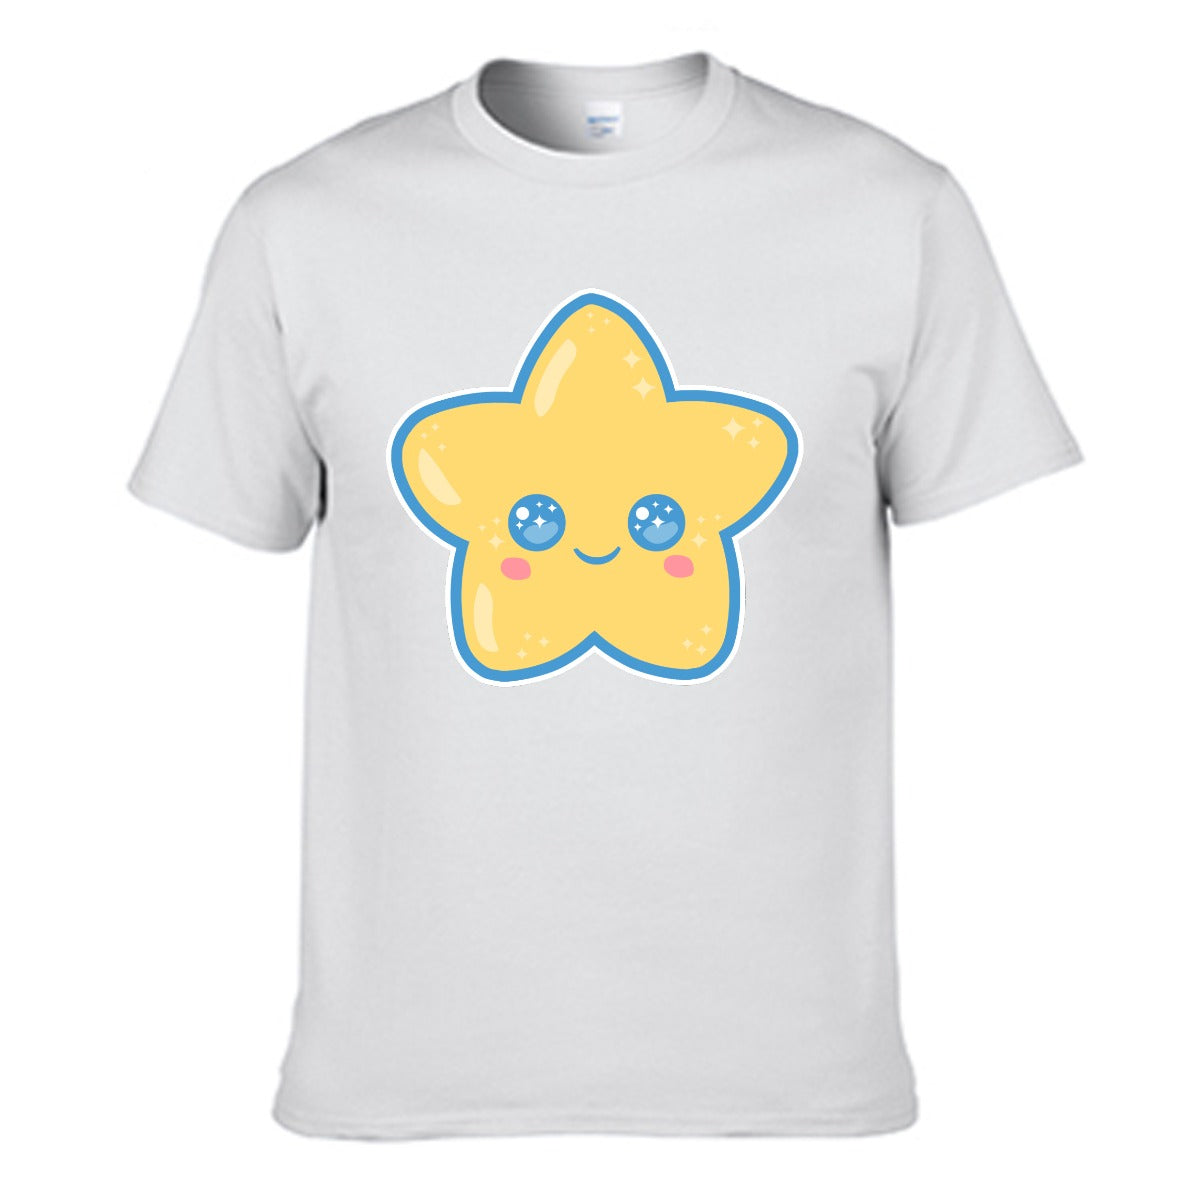 Kawaii Star Men's Cotton Crew Neck T-shirt